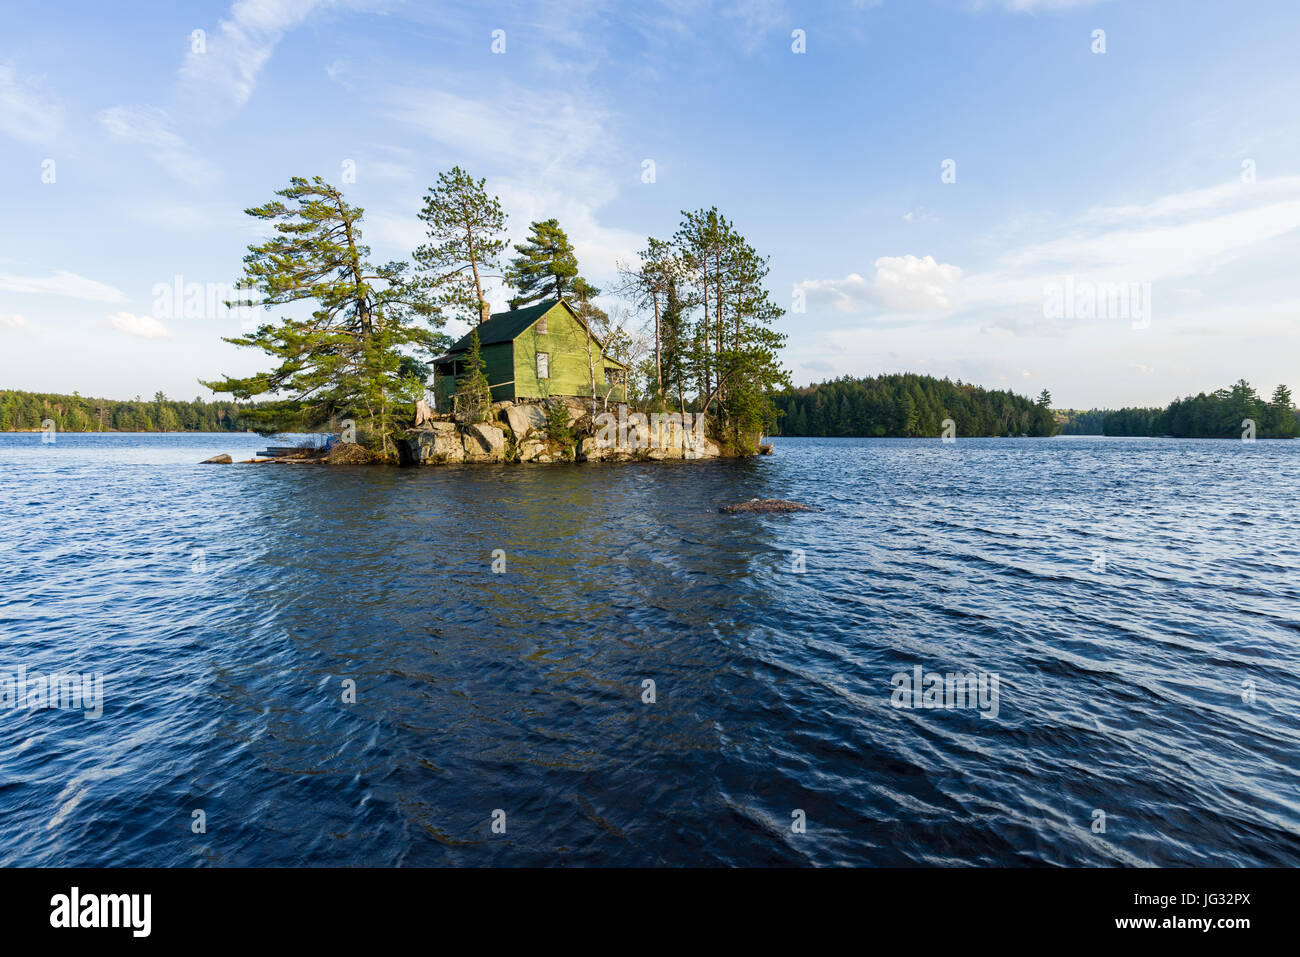 Maison en bois sur petite île entourée par les arbres et le lac, Algonquin Provincial Park, Ontario, Canada Banque D'Images